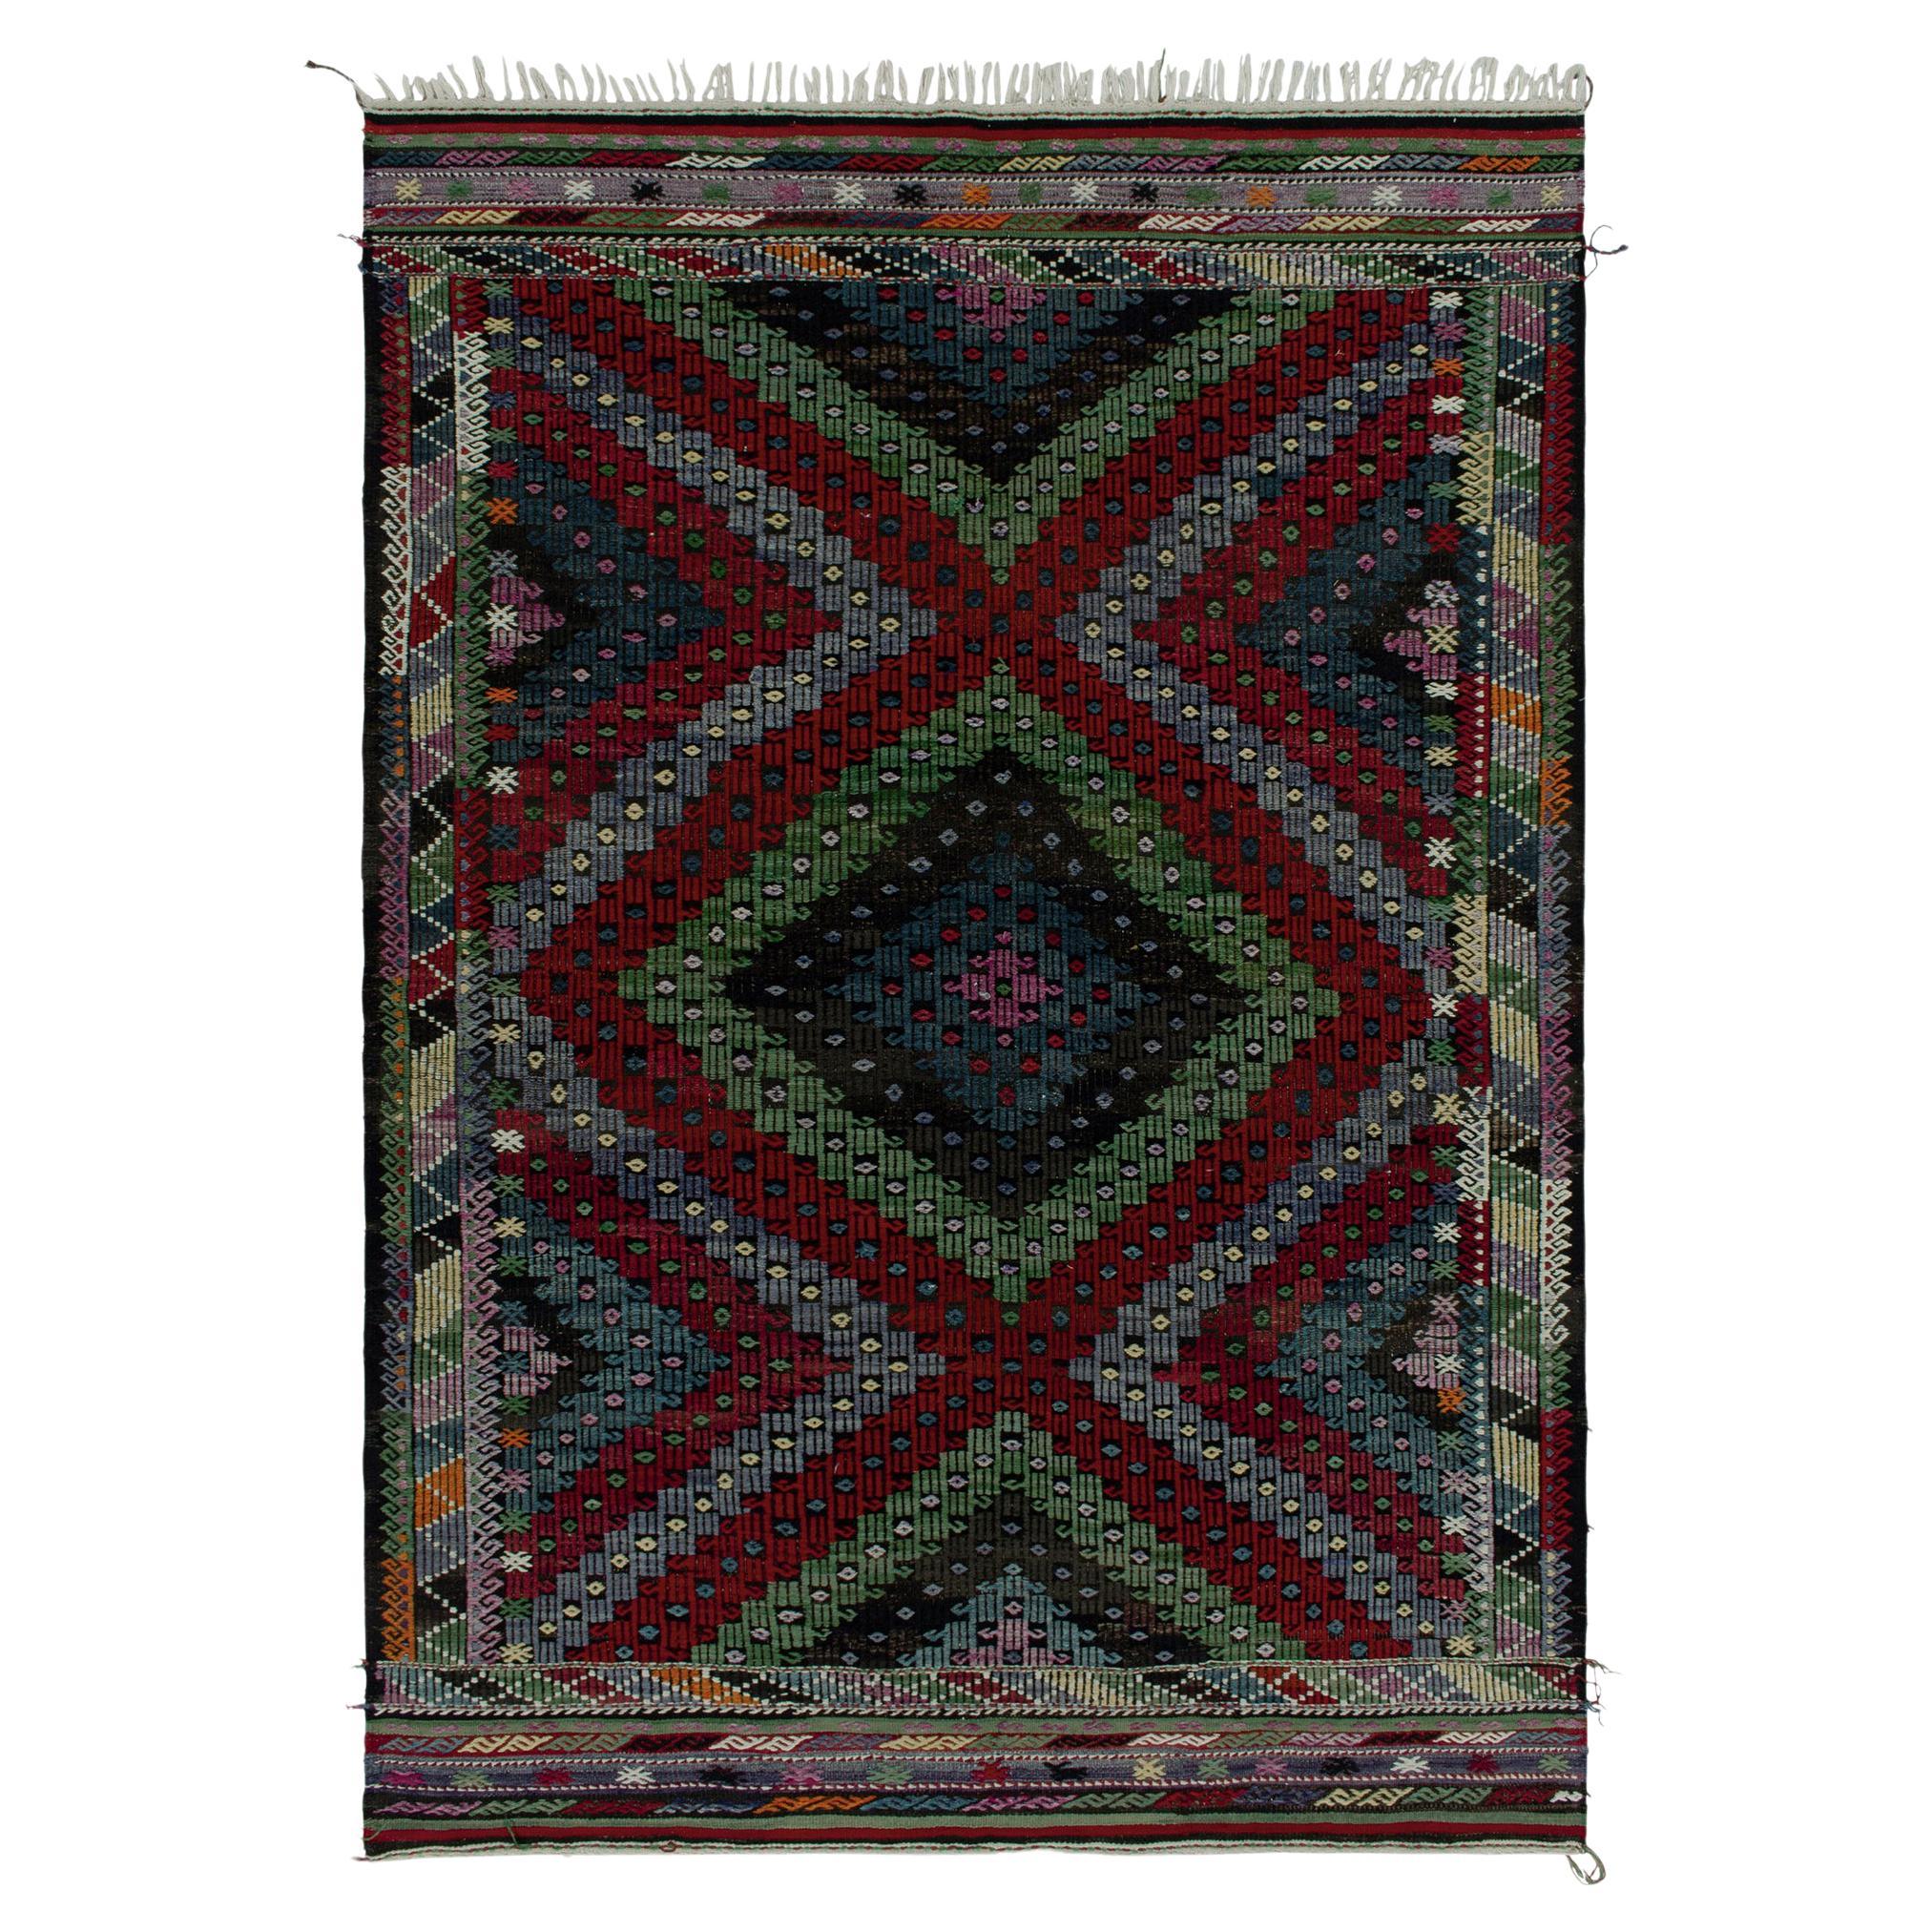 Tapis Kilim tribal vintage en motifs géométriques brodés multicolores par Rug & kilim